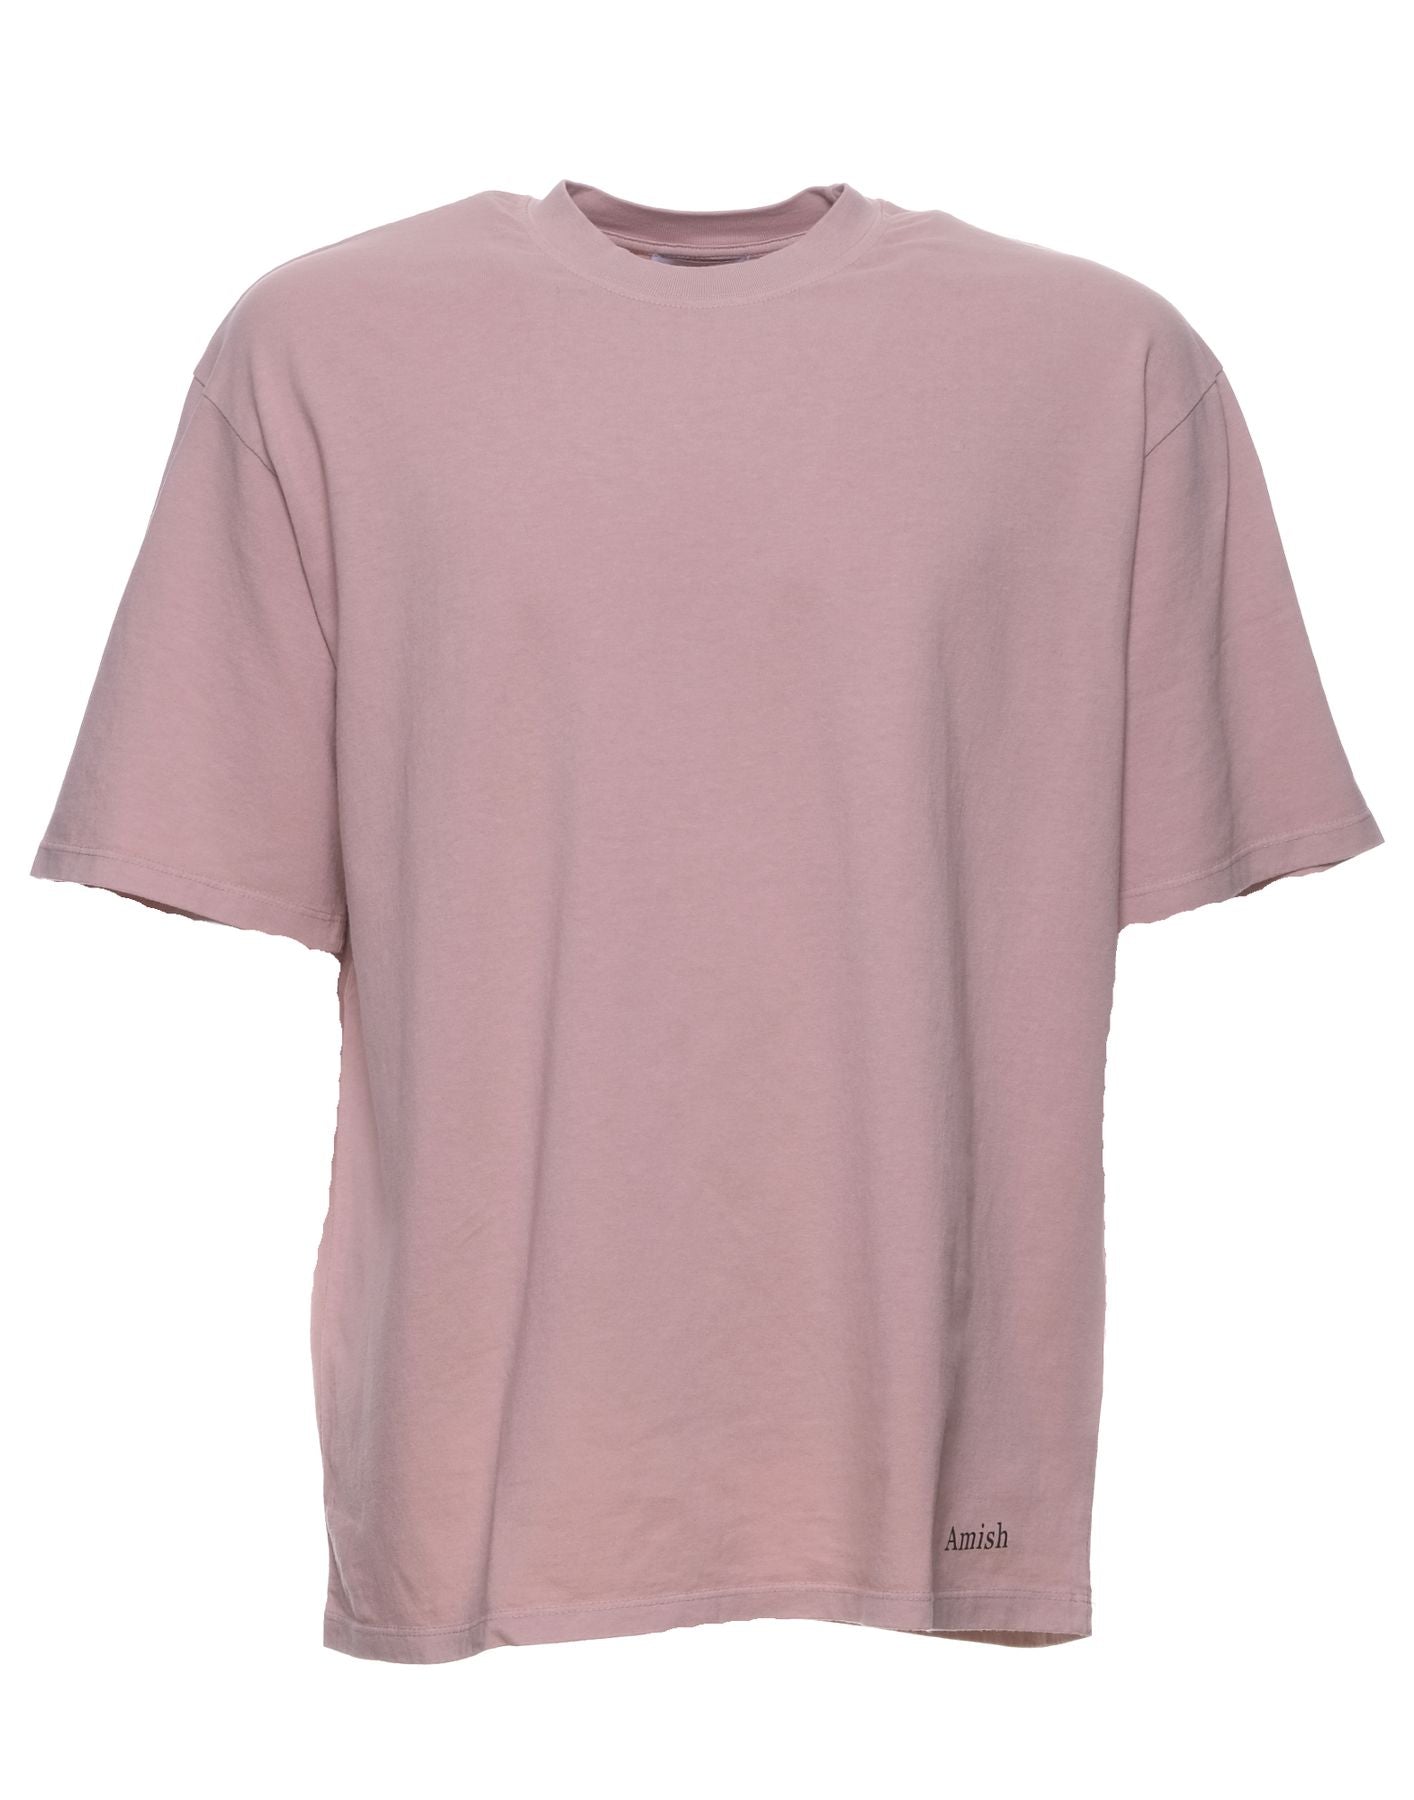 Camiseta hombre amx035cg45xxxxx rosa gris Amish